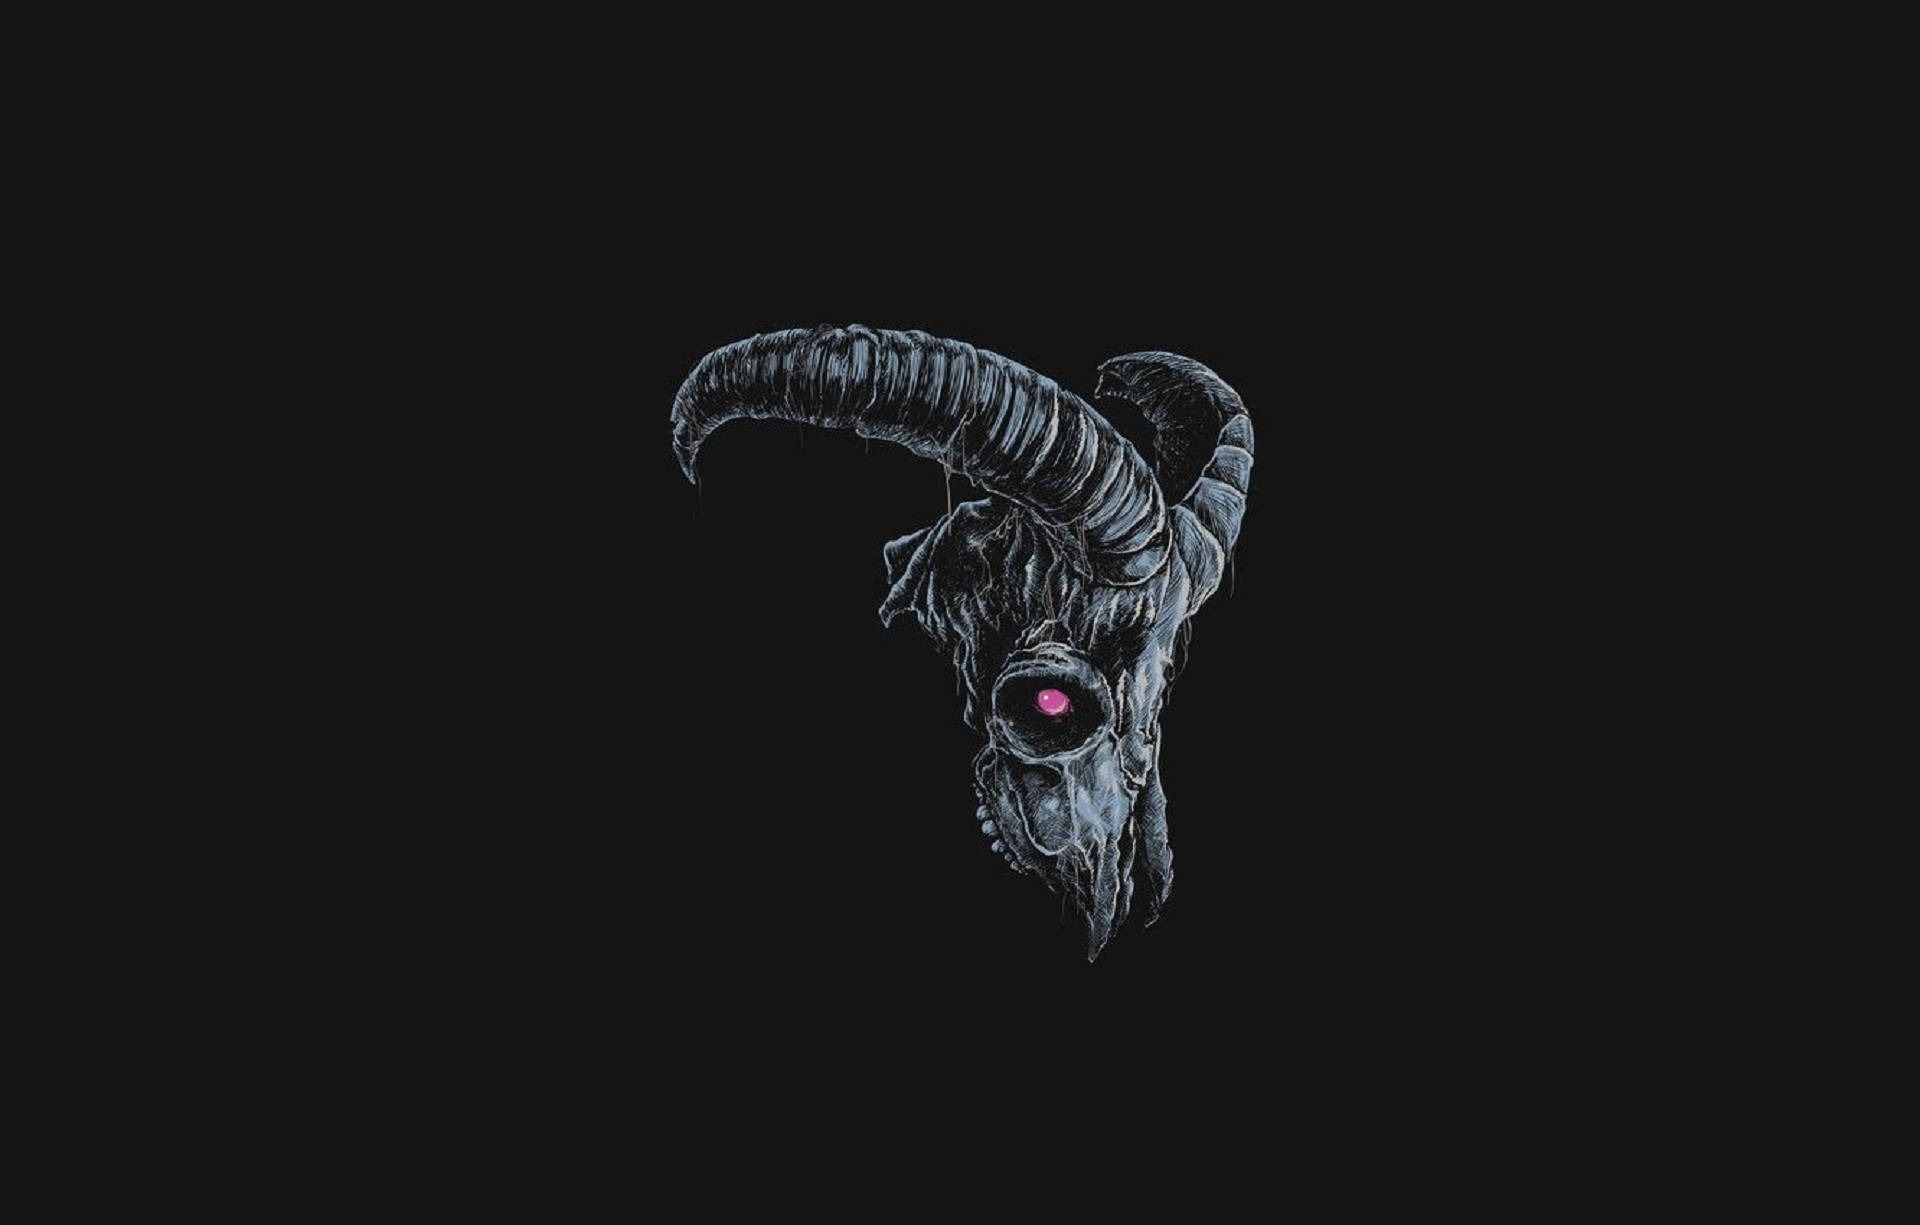 Caption: Striking Image Of A Devil Goat In Black Background